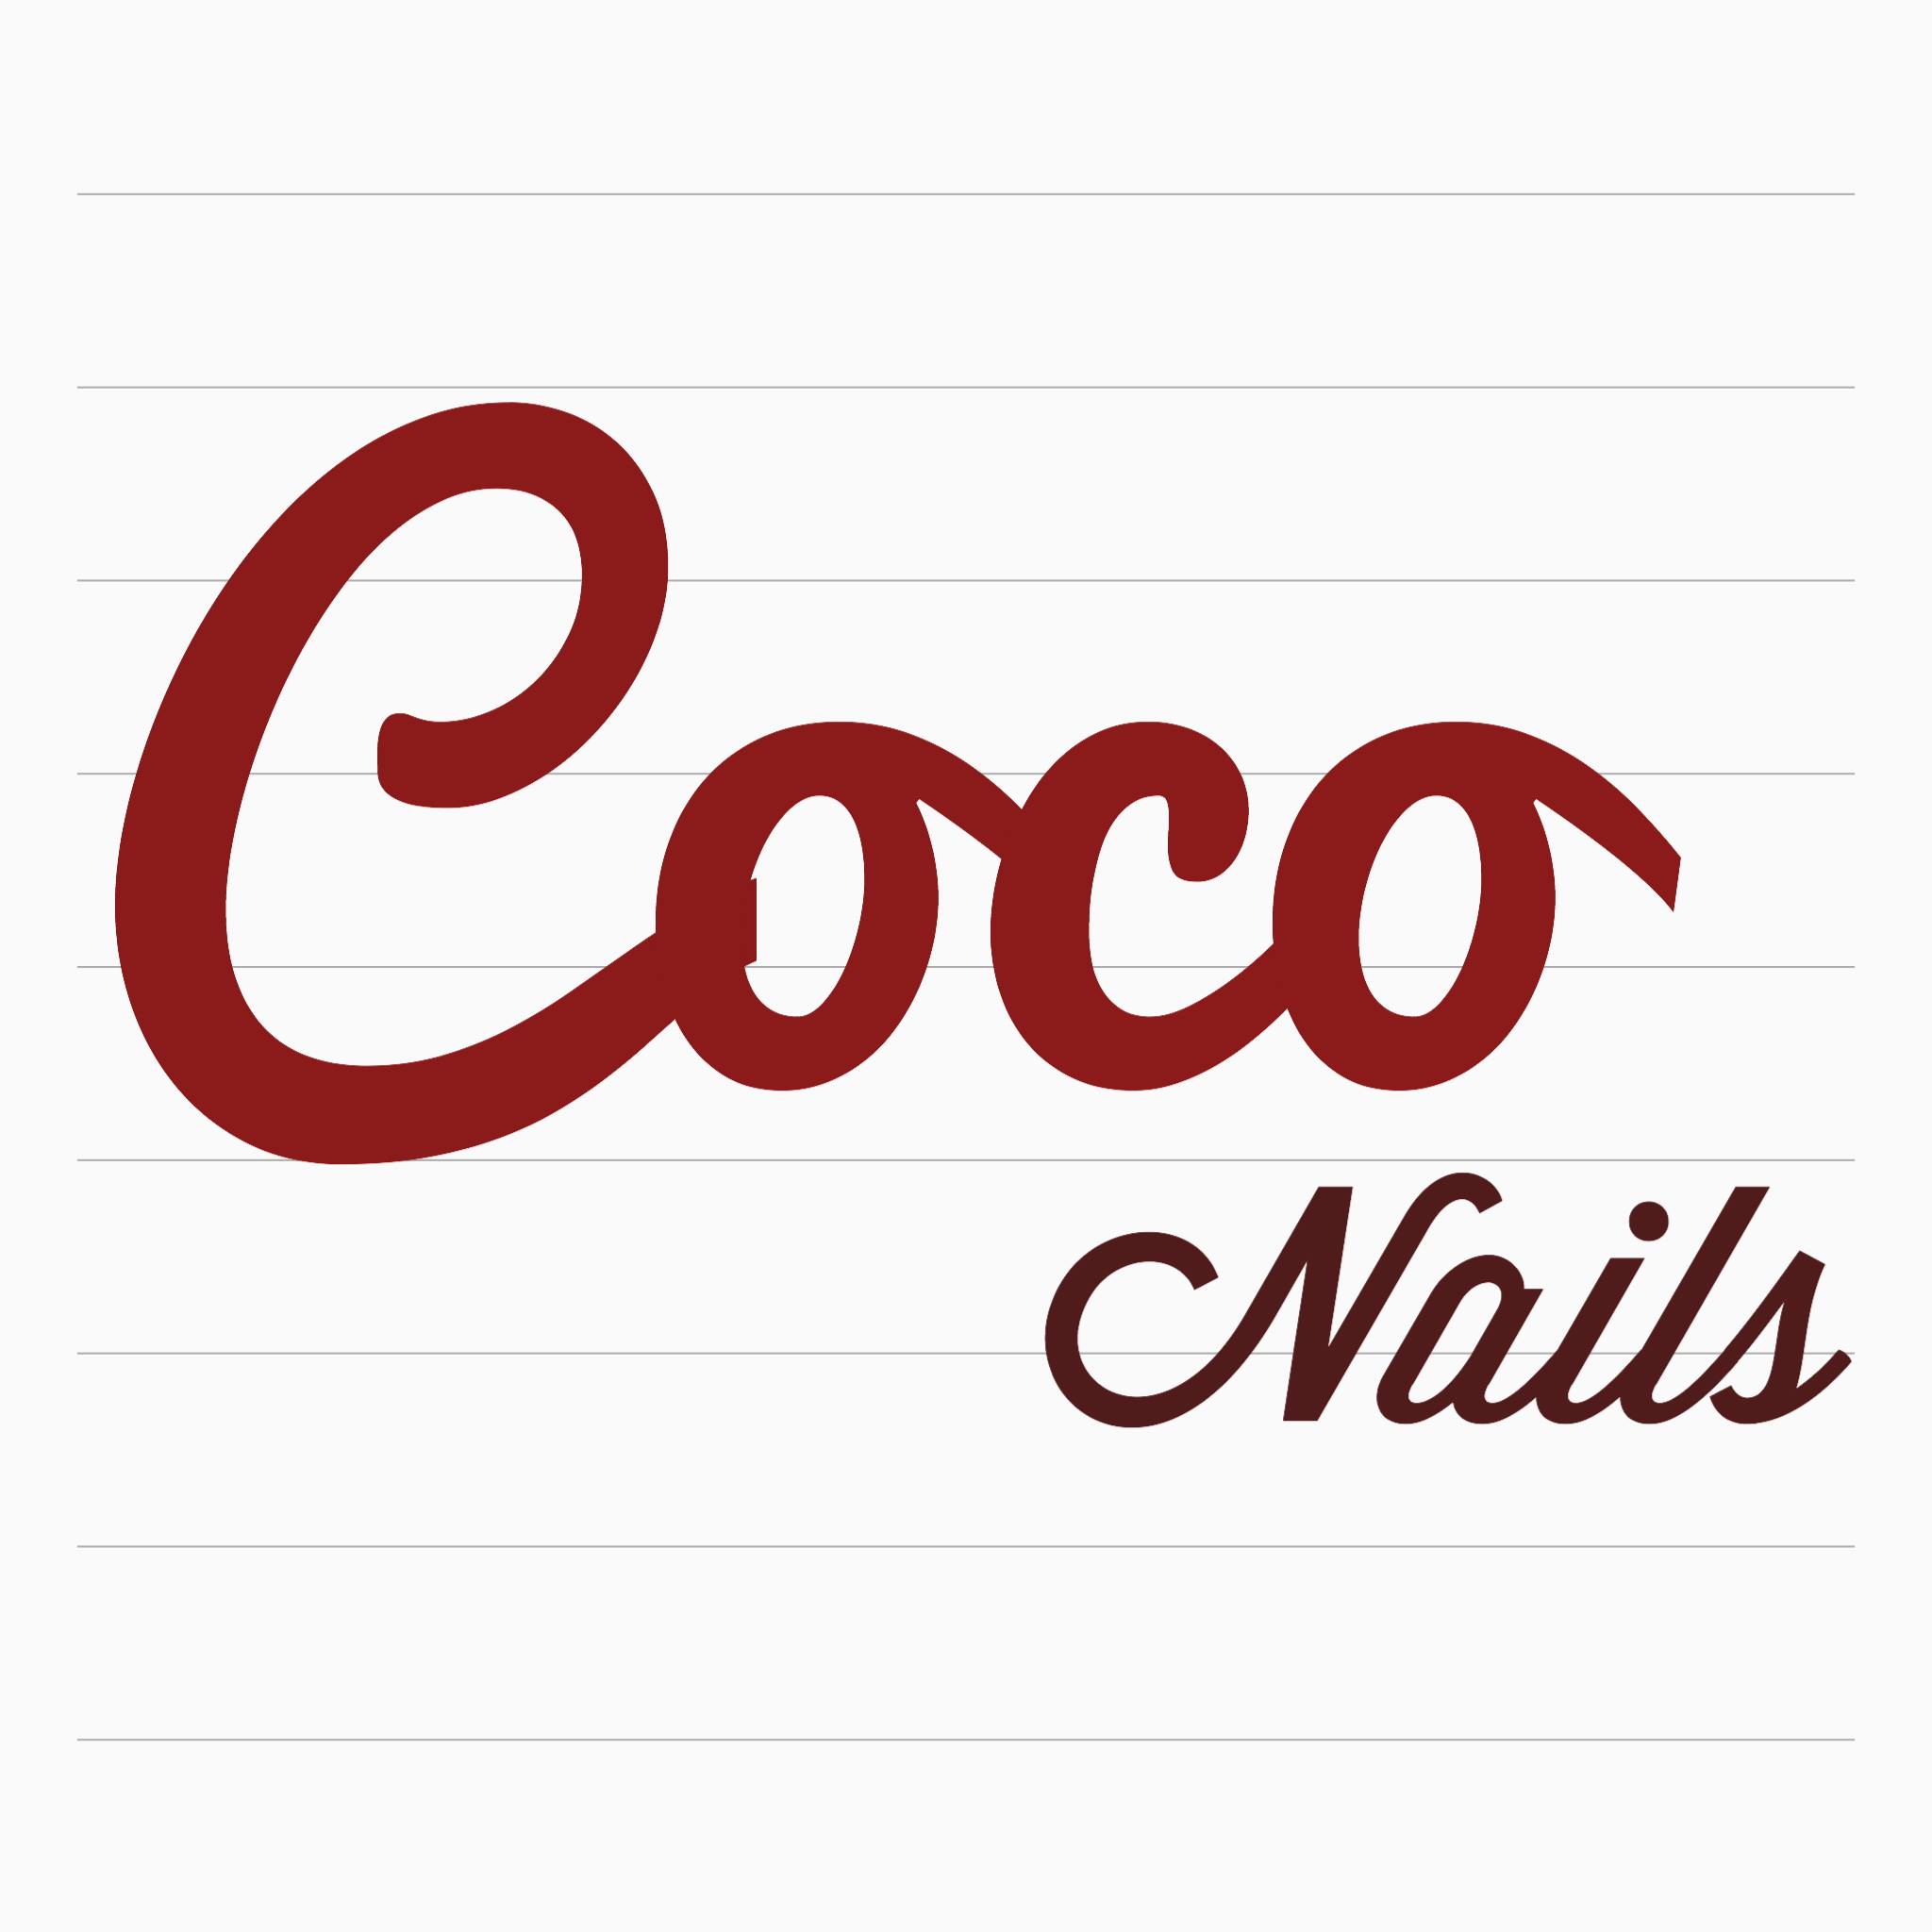 Coco Nails - Missouri City Logo